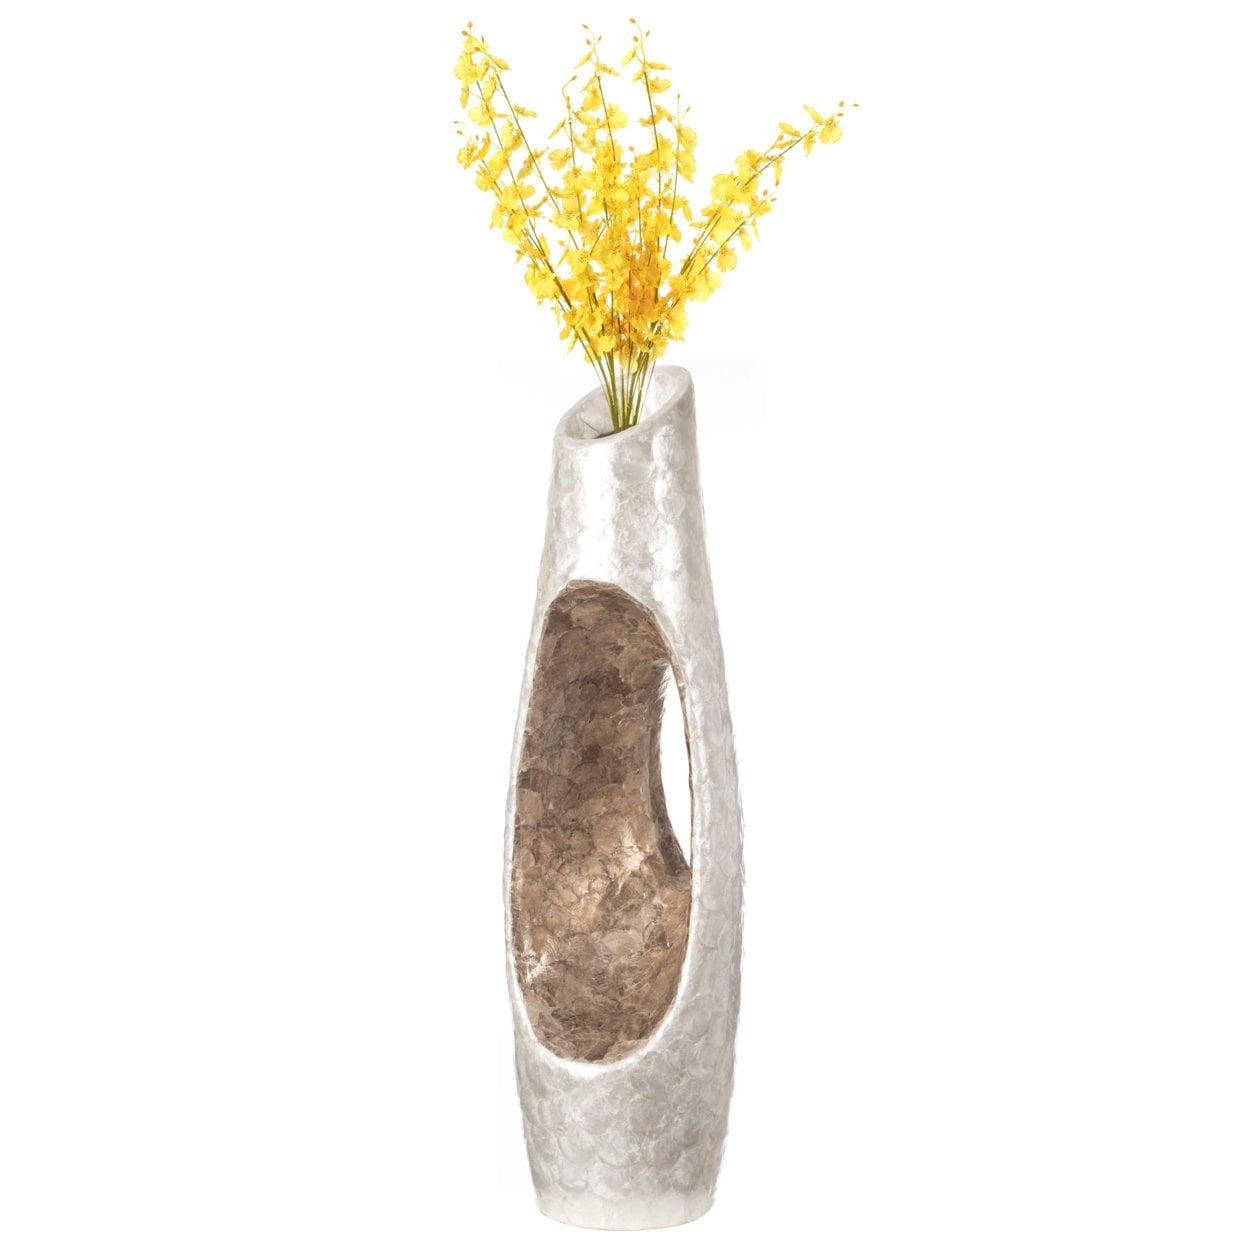 Elegant White and Gold 43" Decorative Floor Vase in Fiberglass